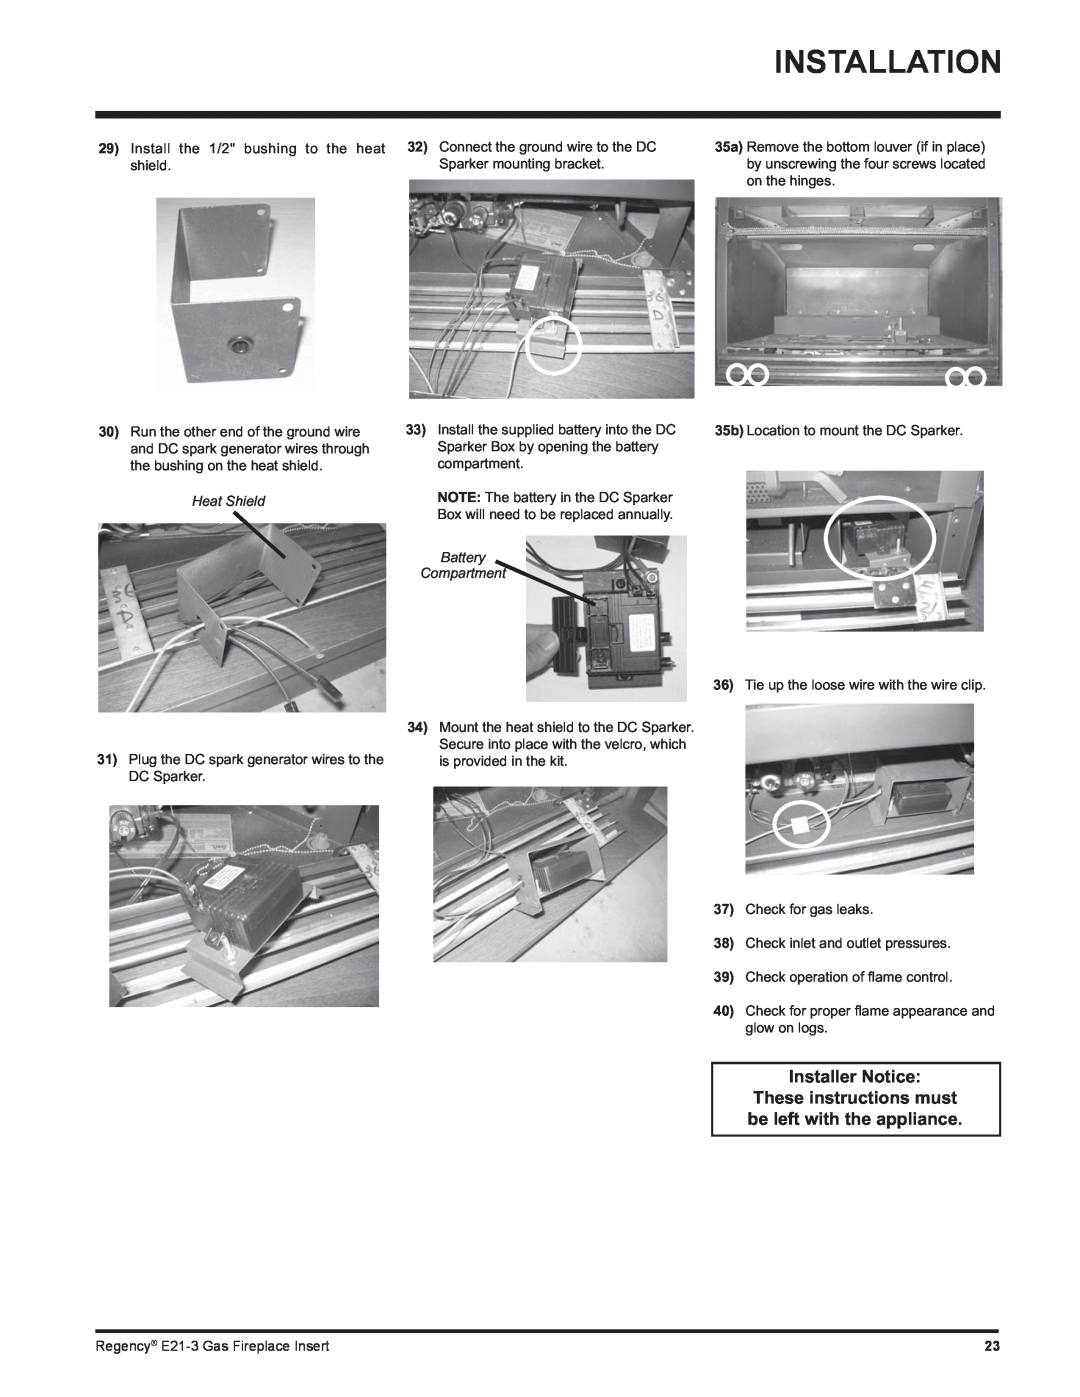 Regency E21-LP3, E21-NG3 installation manual Installation, Installer Notice, Heat Shield, Battery Compartment 